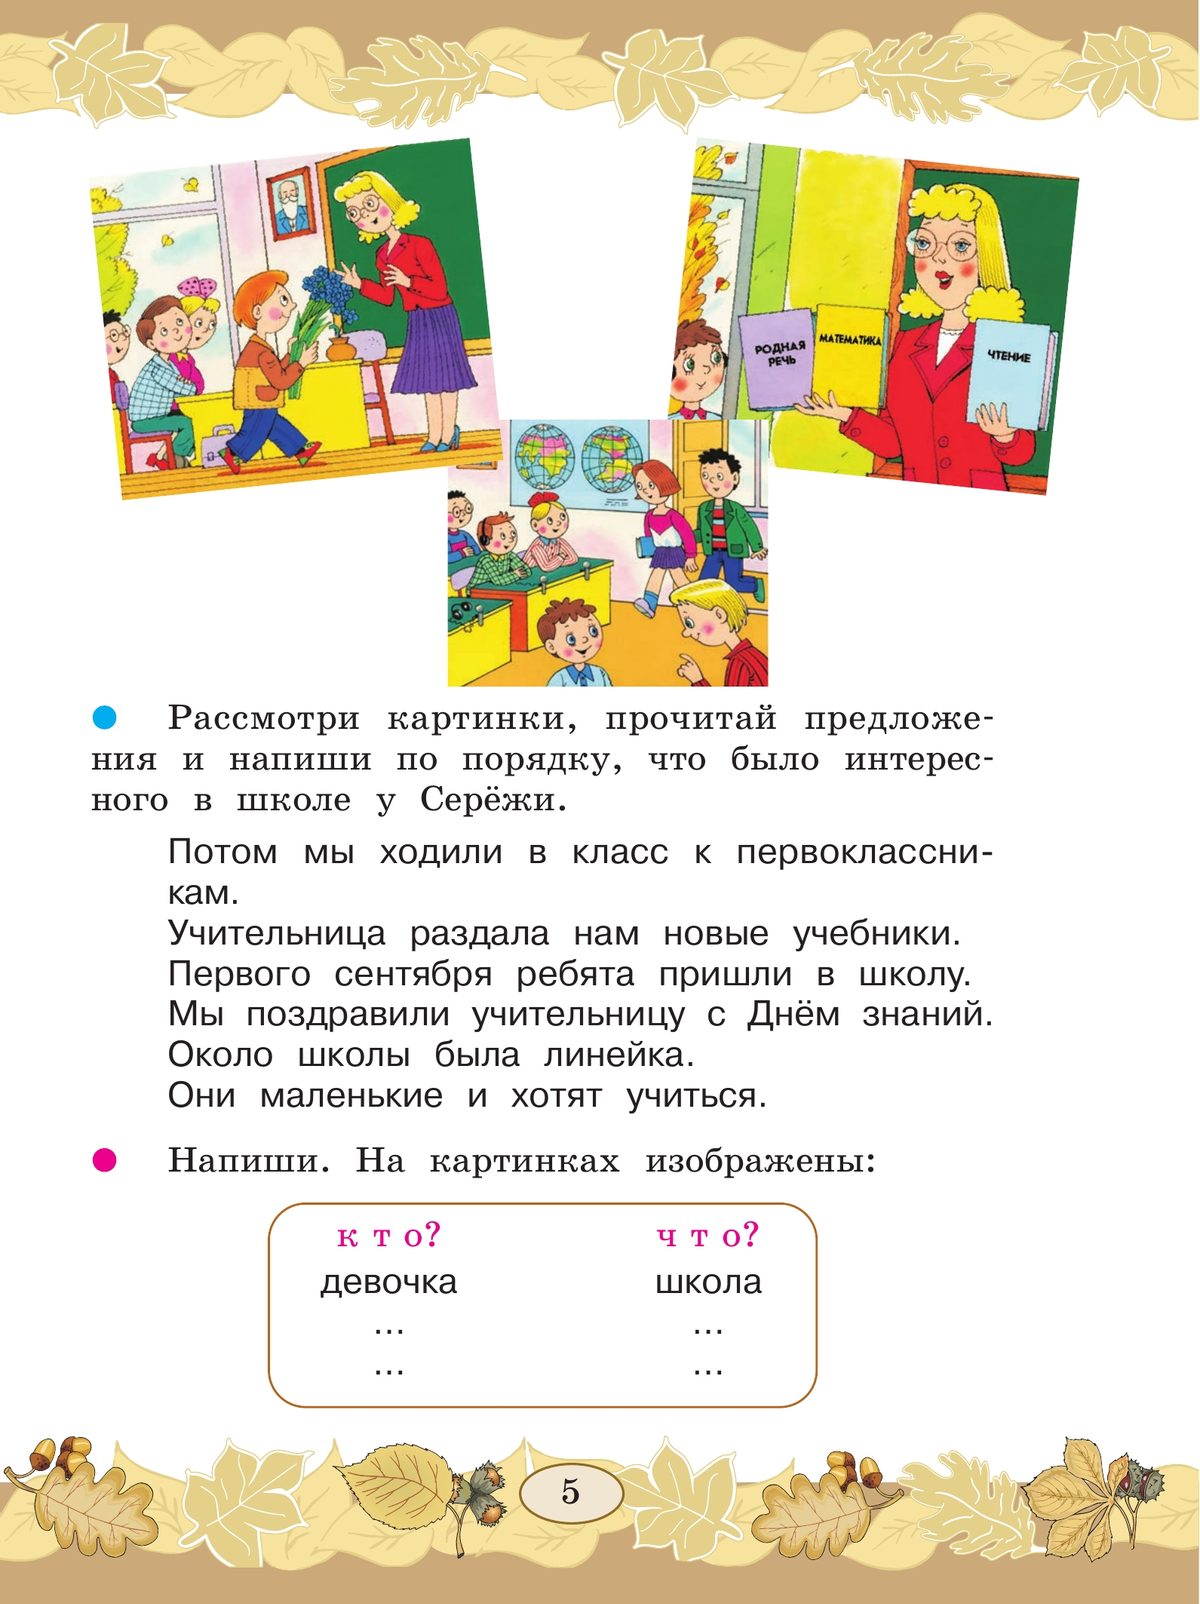 Русский язык. Развитие речи. 3 класс. Учебник. В 2 ч. Часть 1 (для глухих обучающихся) 2